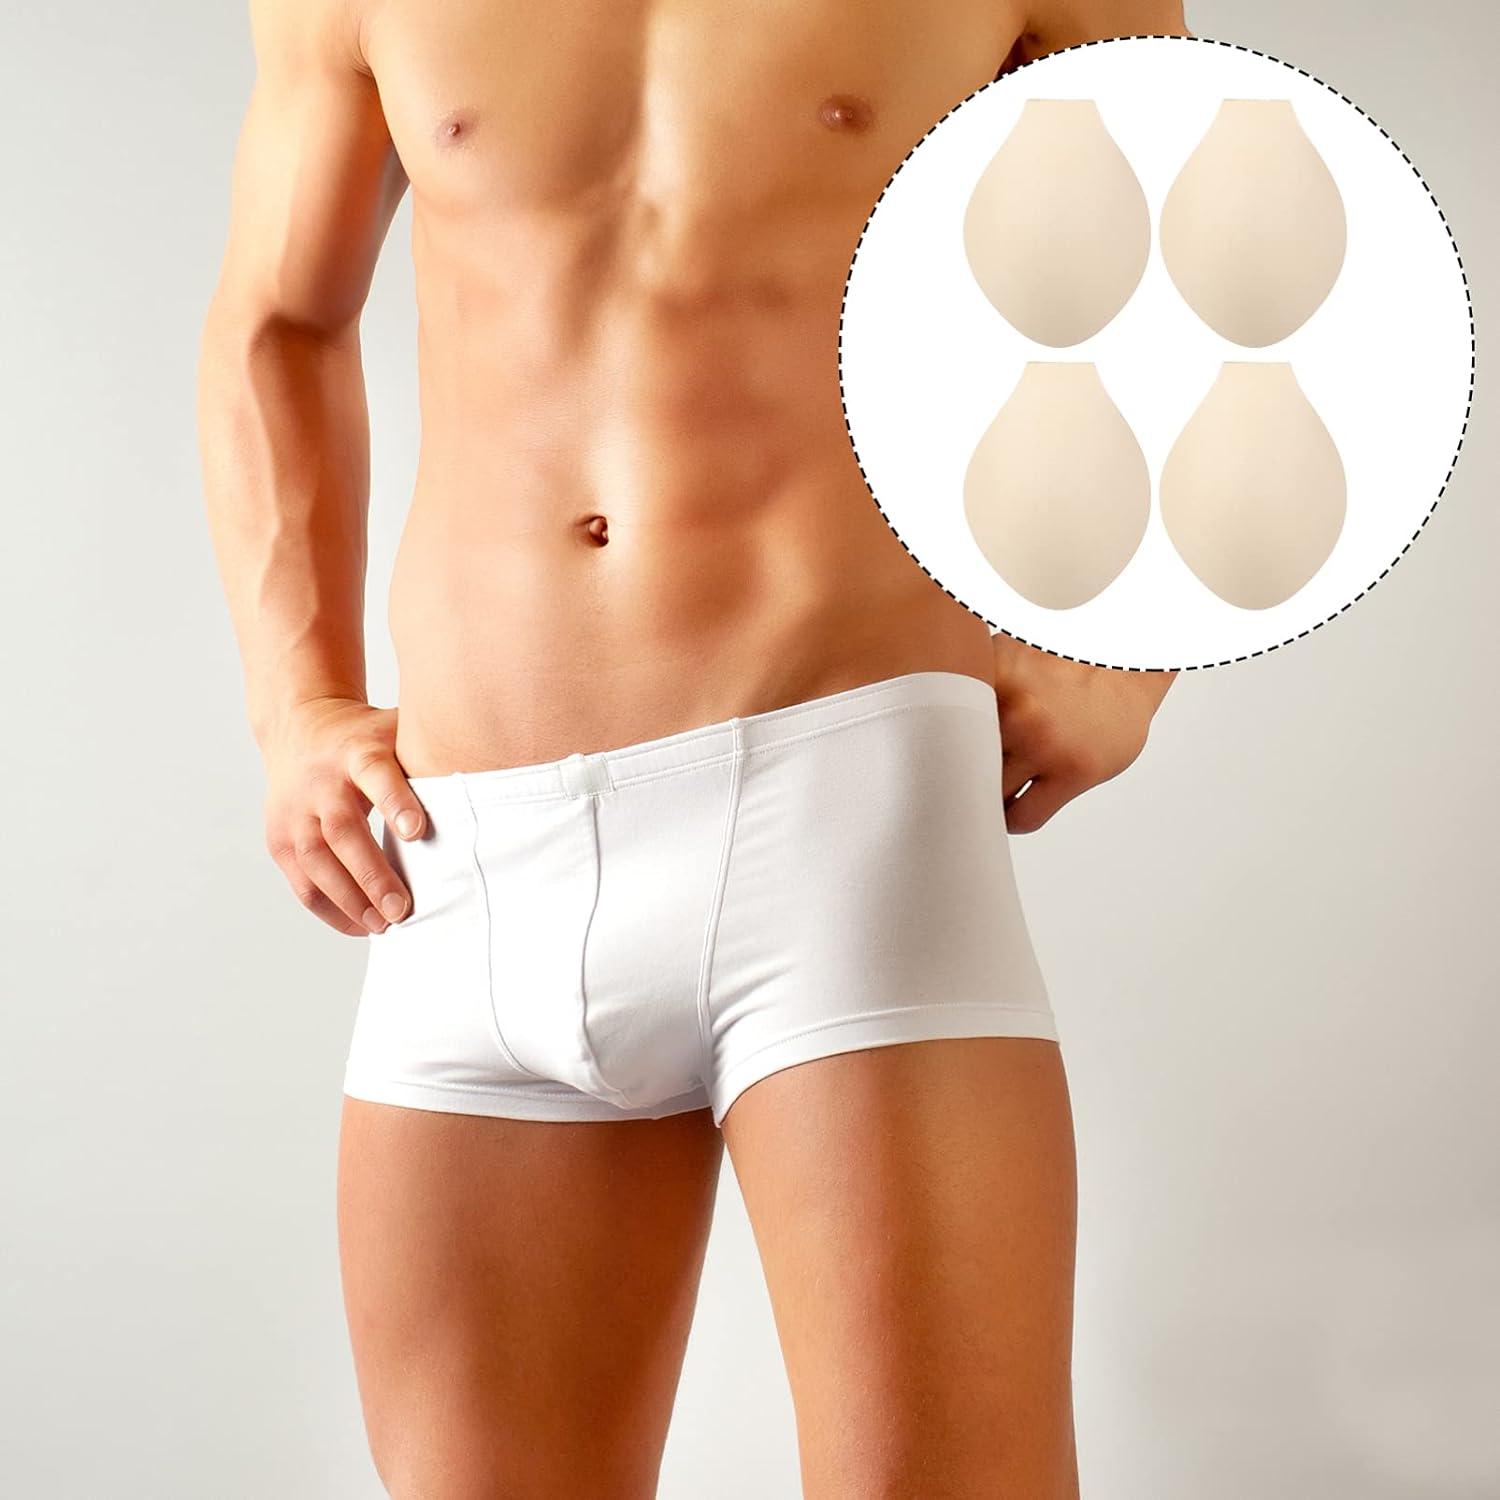 SOIMISS Mens Underwear 8pcs Coaster Removable Bulge Pad De Cups